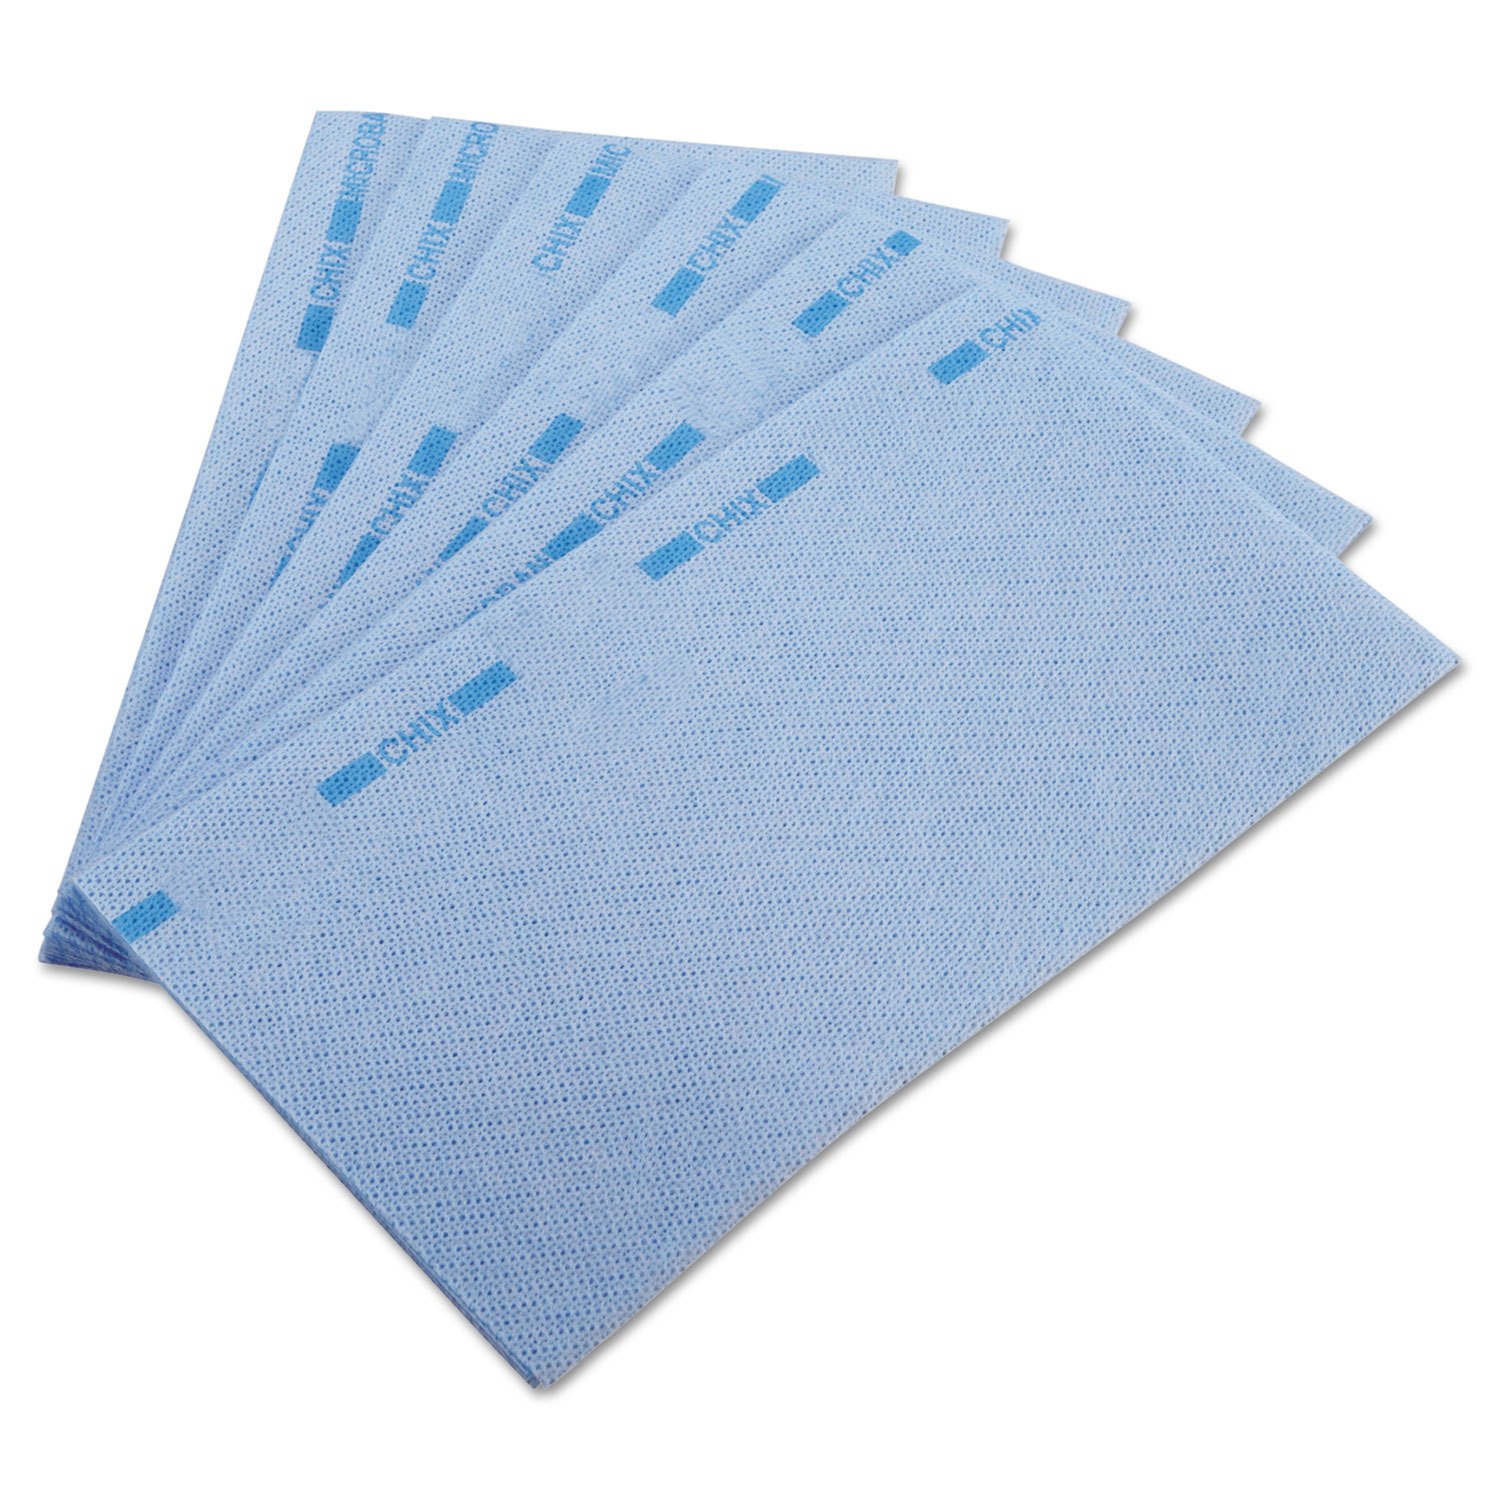  Chix CHI 8251 Food Service Towels, 13 x 24, Blue, 150/Carton (CHI8251) 